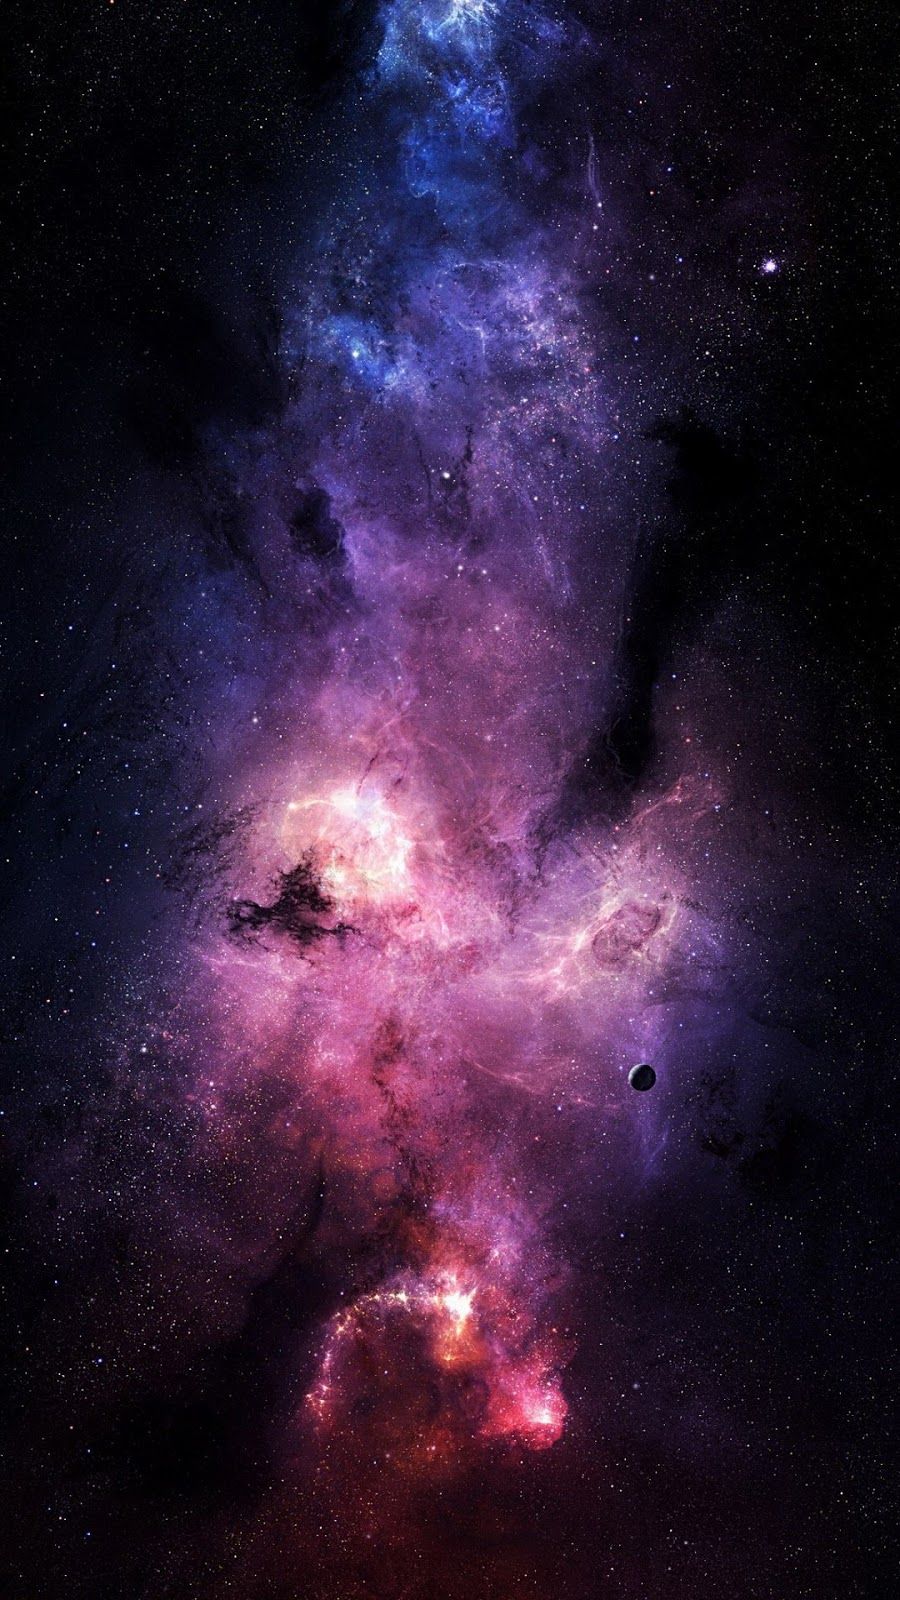 espacio fondos de pantalla android,objeto astronómico,nebulosa,espacio exterior,cielo,oscuridad